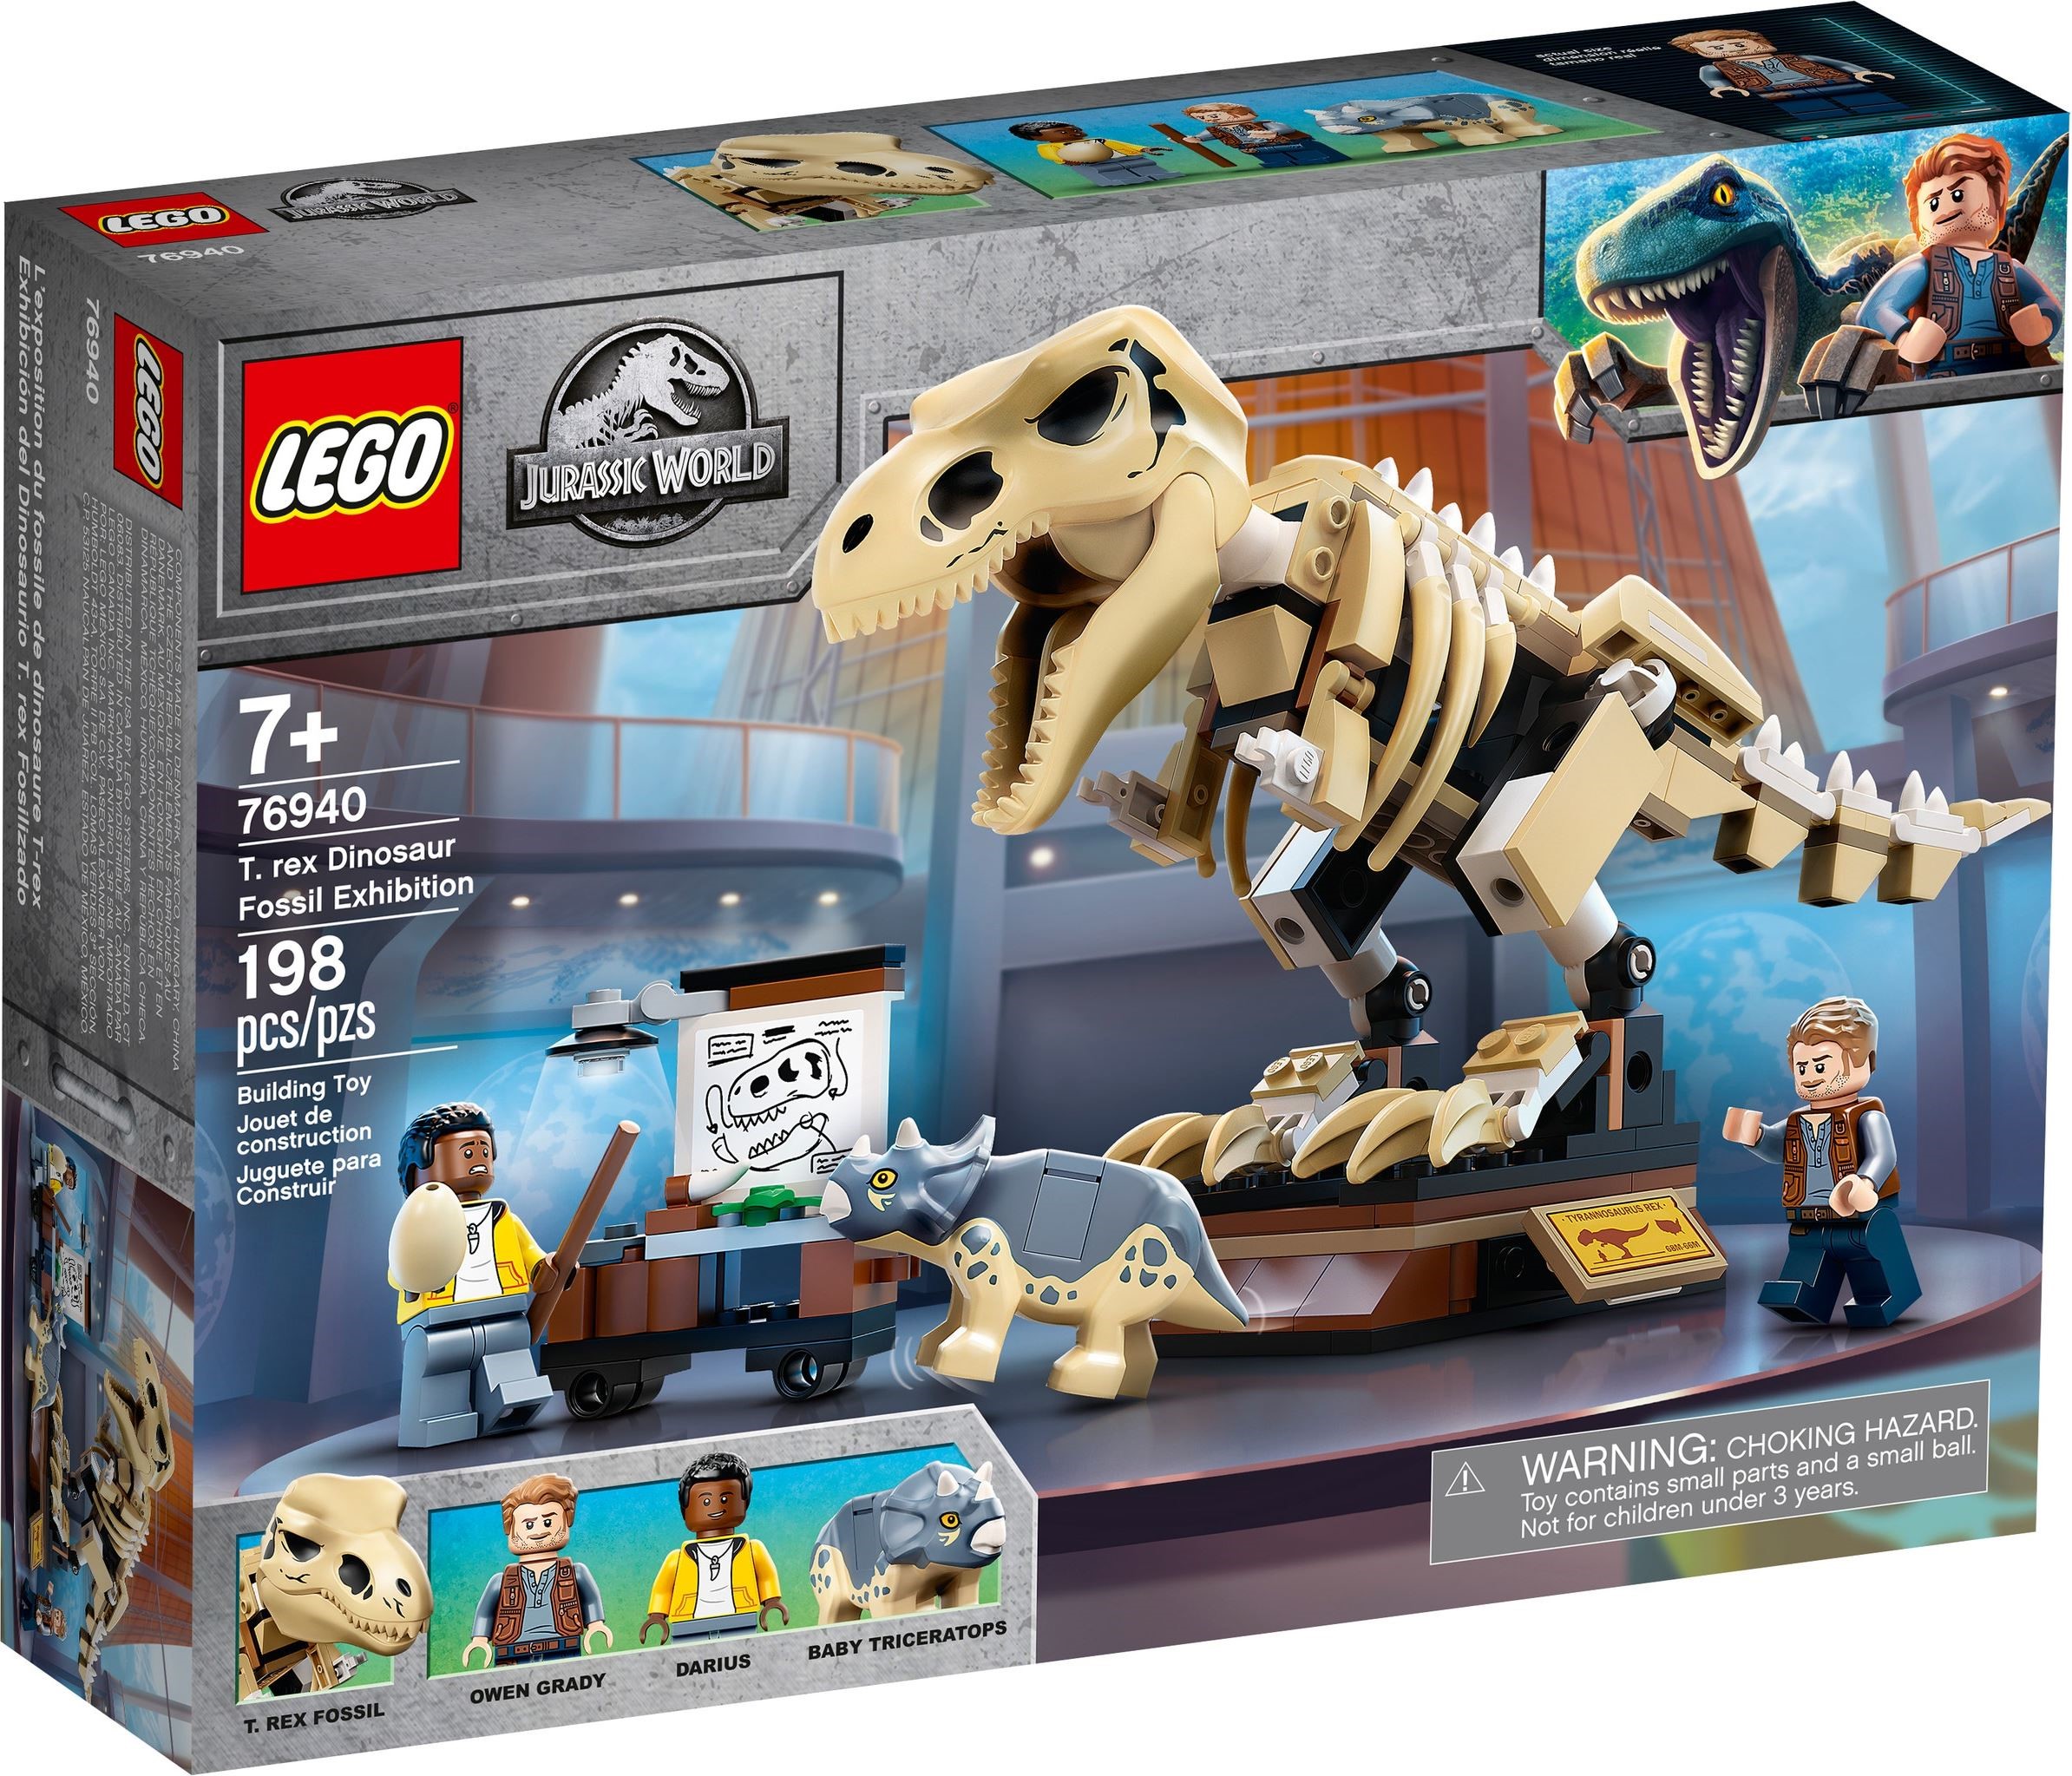 cylinder forvrængning orm LEGO Jurassic World 2021 Sets Revealed - The Brick Fan